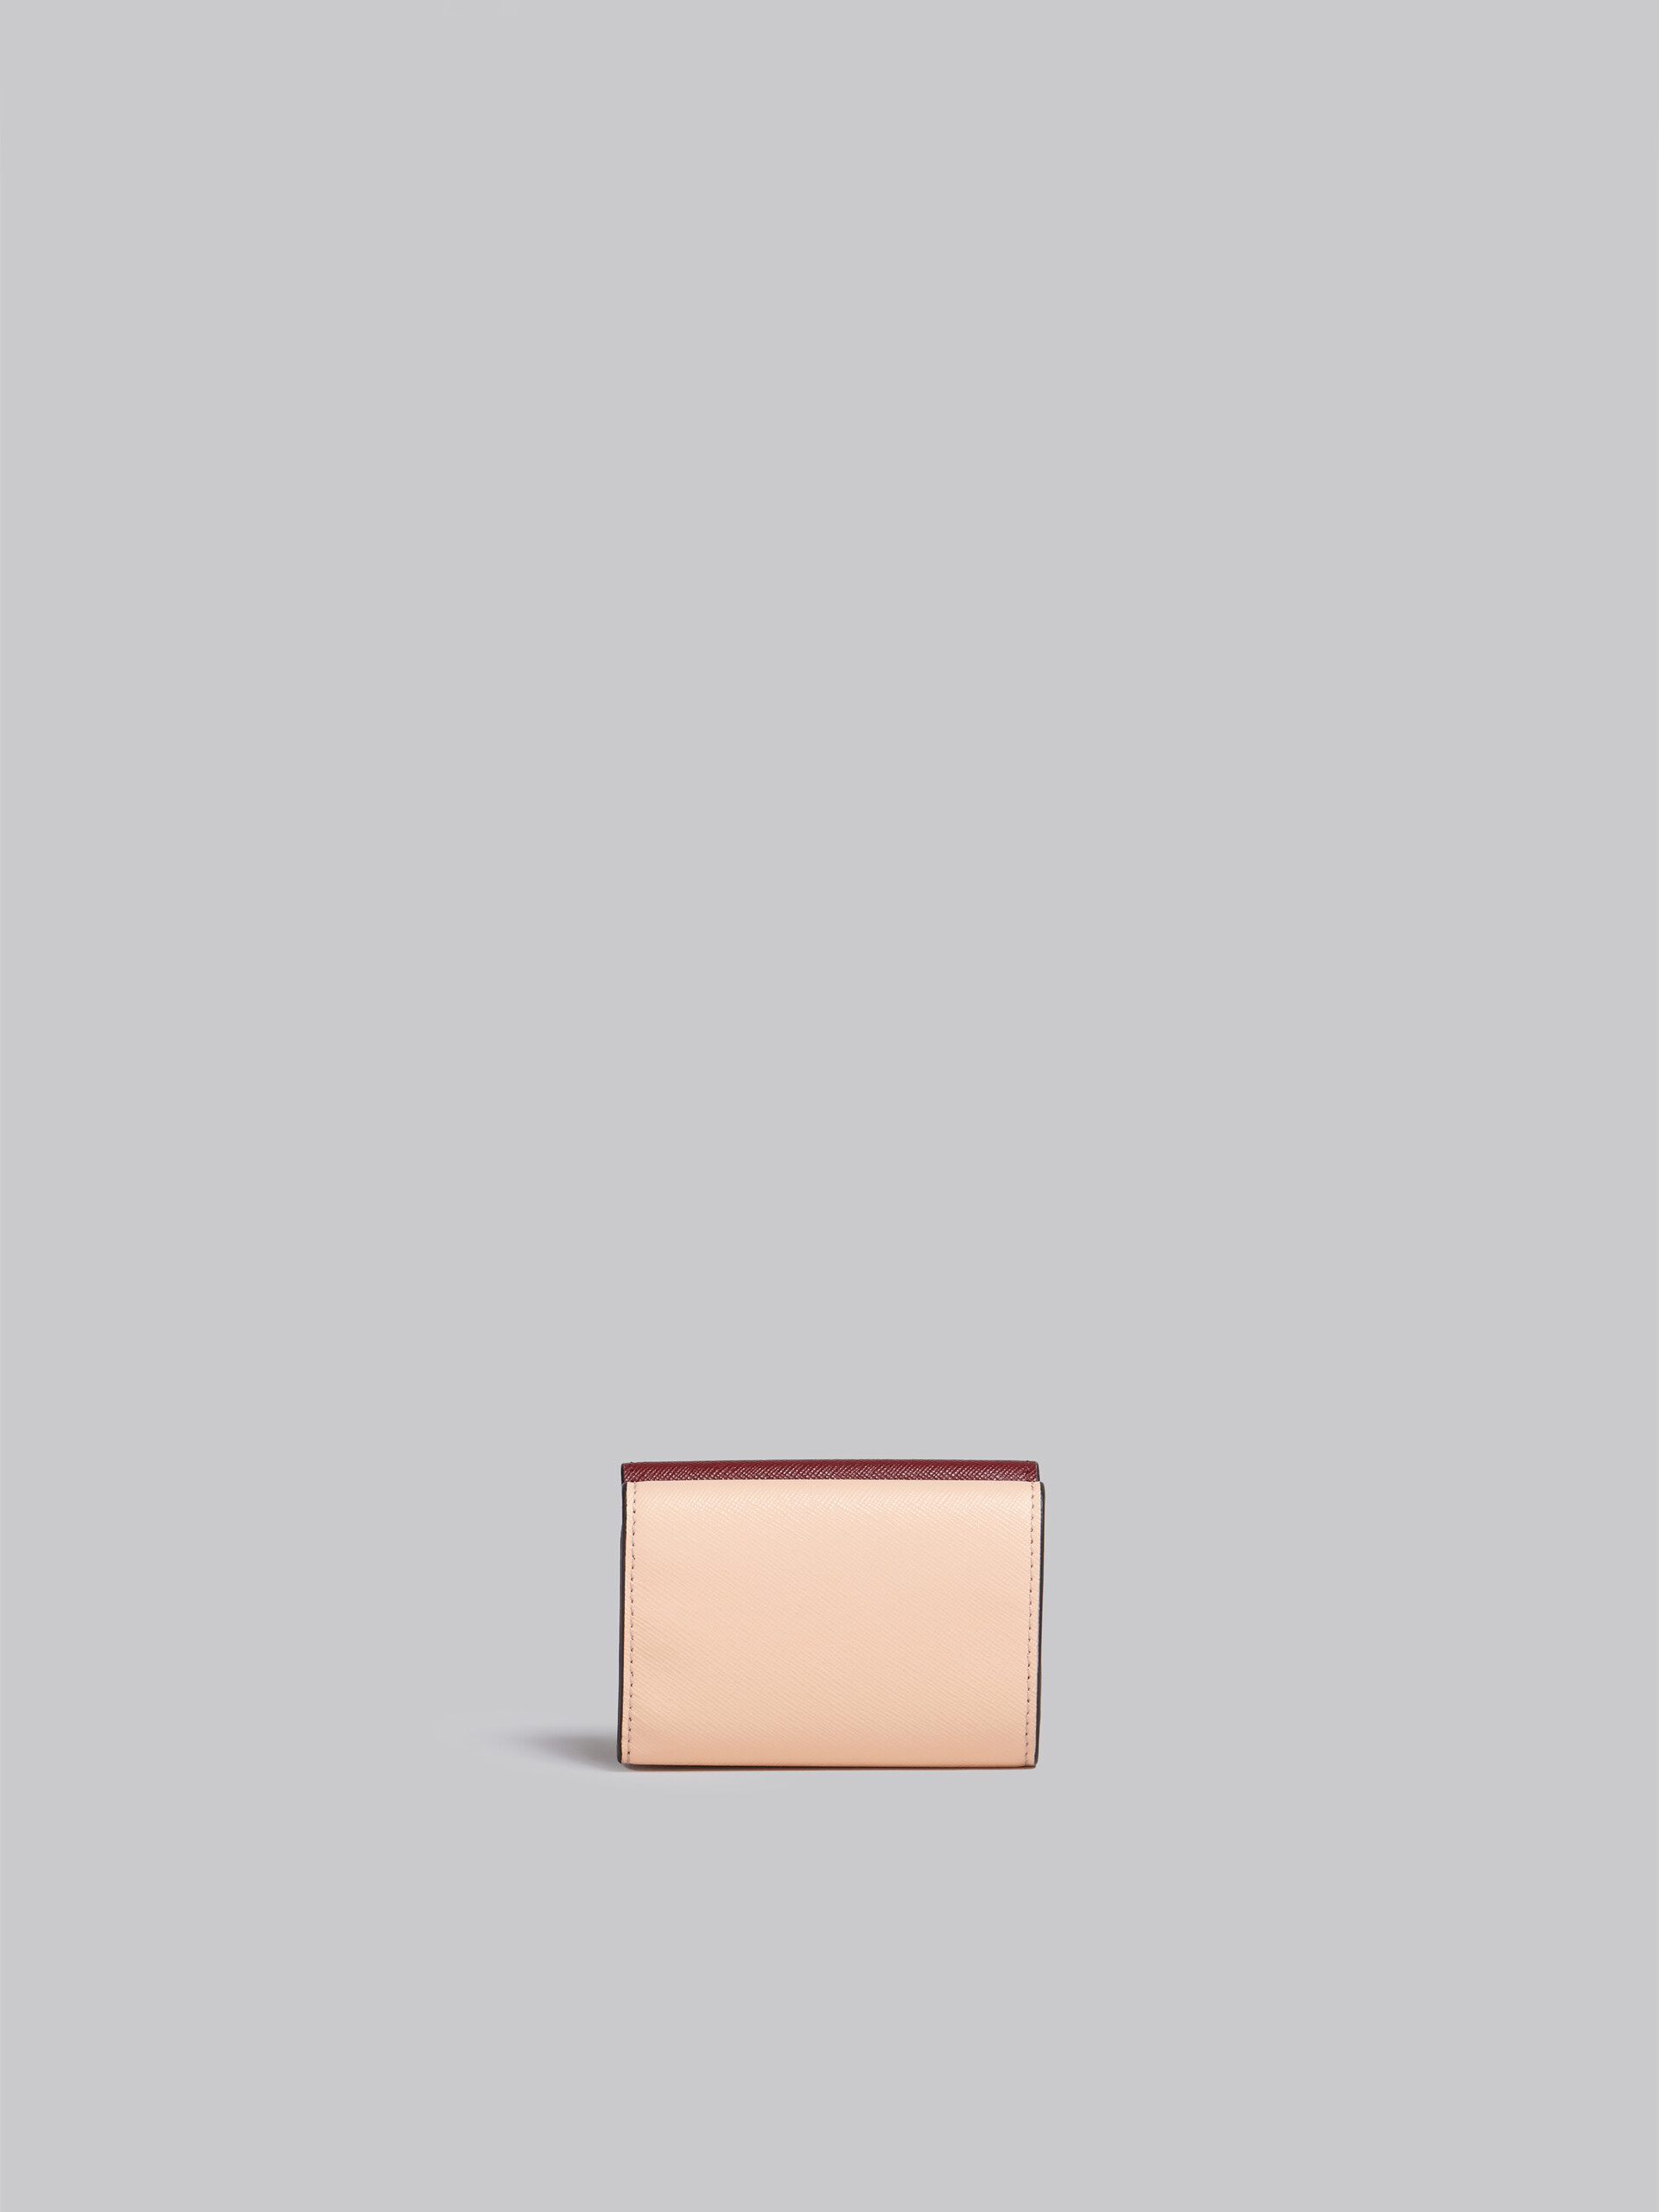 Portafoglio tri-fold in saffiano rosso rosa e bianco - Portafogli - Image 3